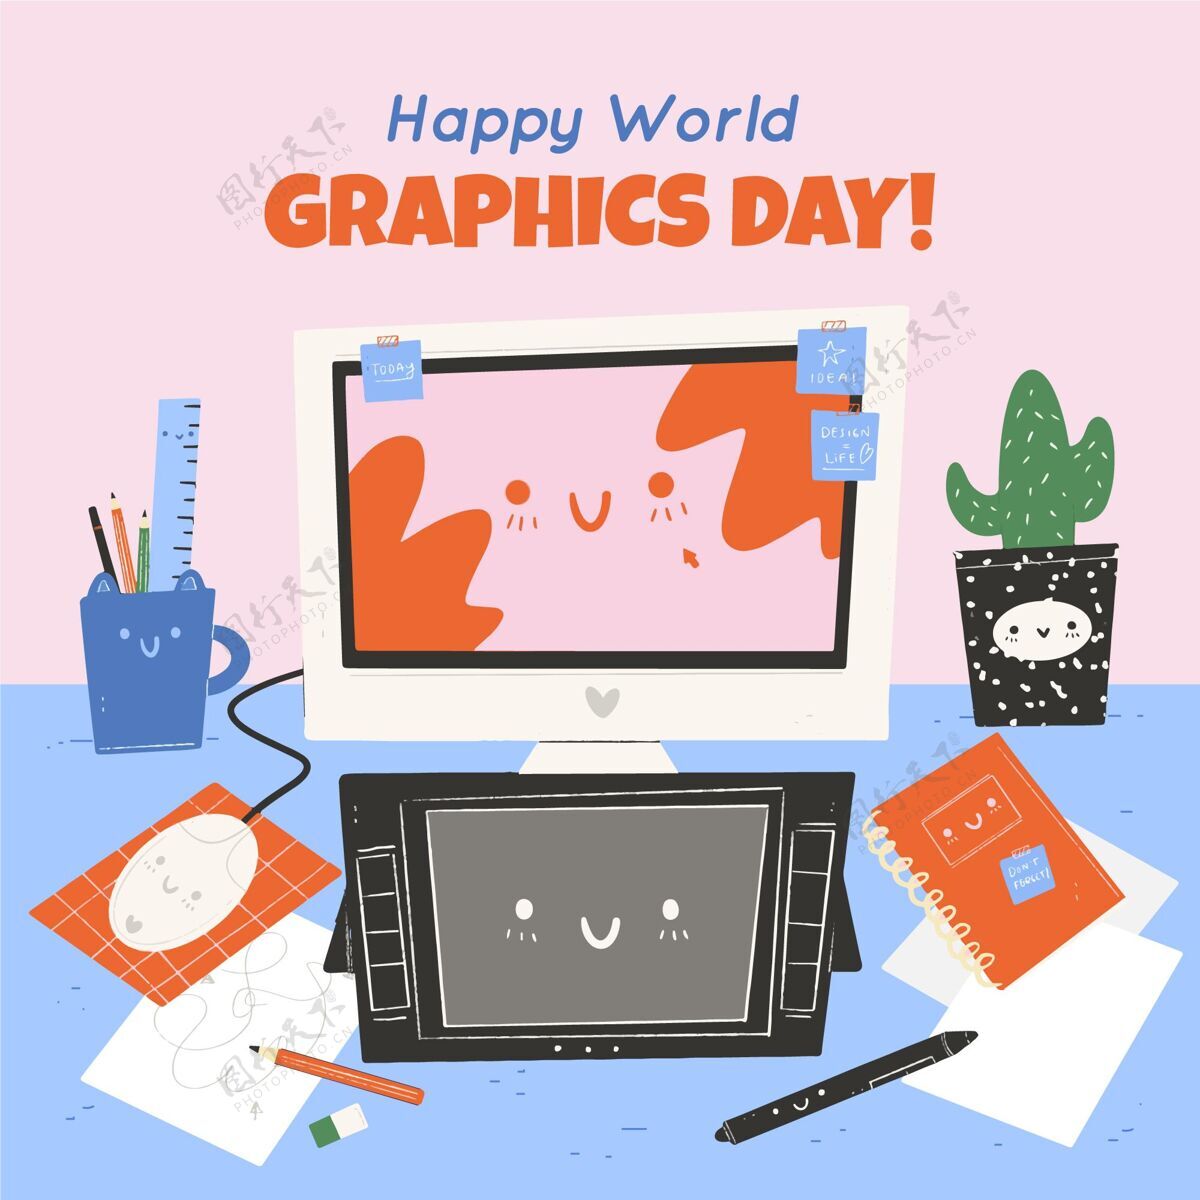 图形日手绘世界图形日插画世界通信设计日图形庆典